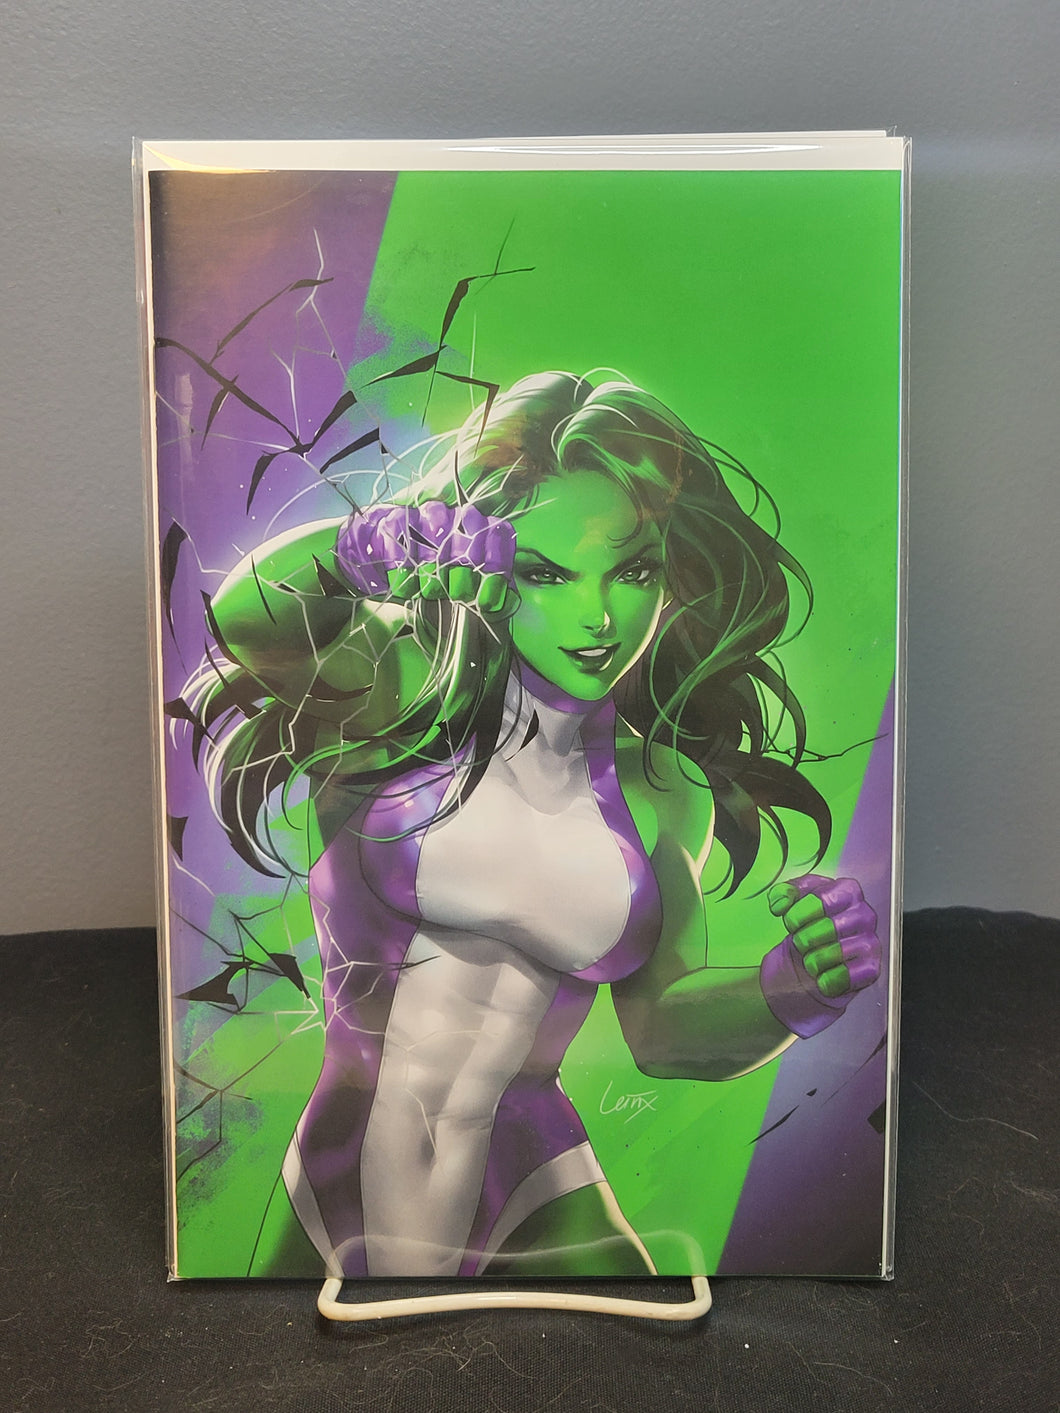 Sensational She-Hulk #1 Leirix 1:50 Variant